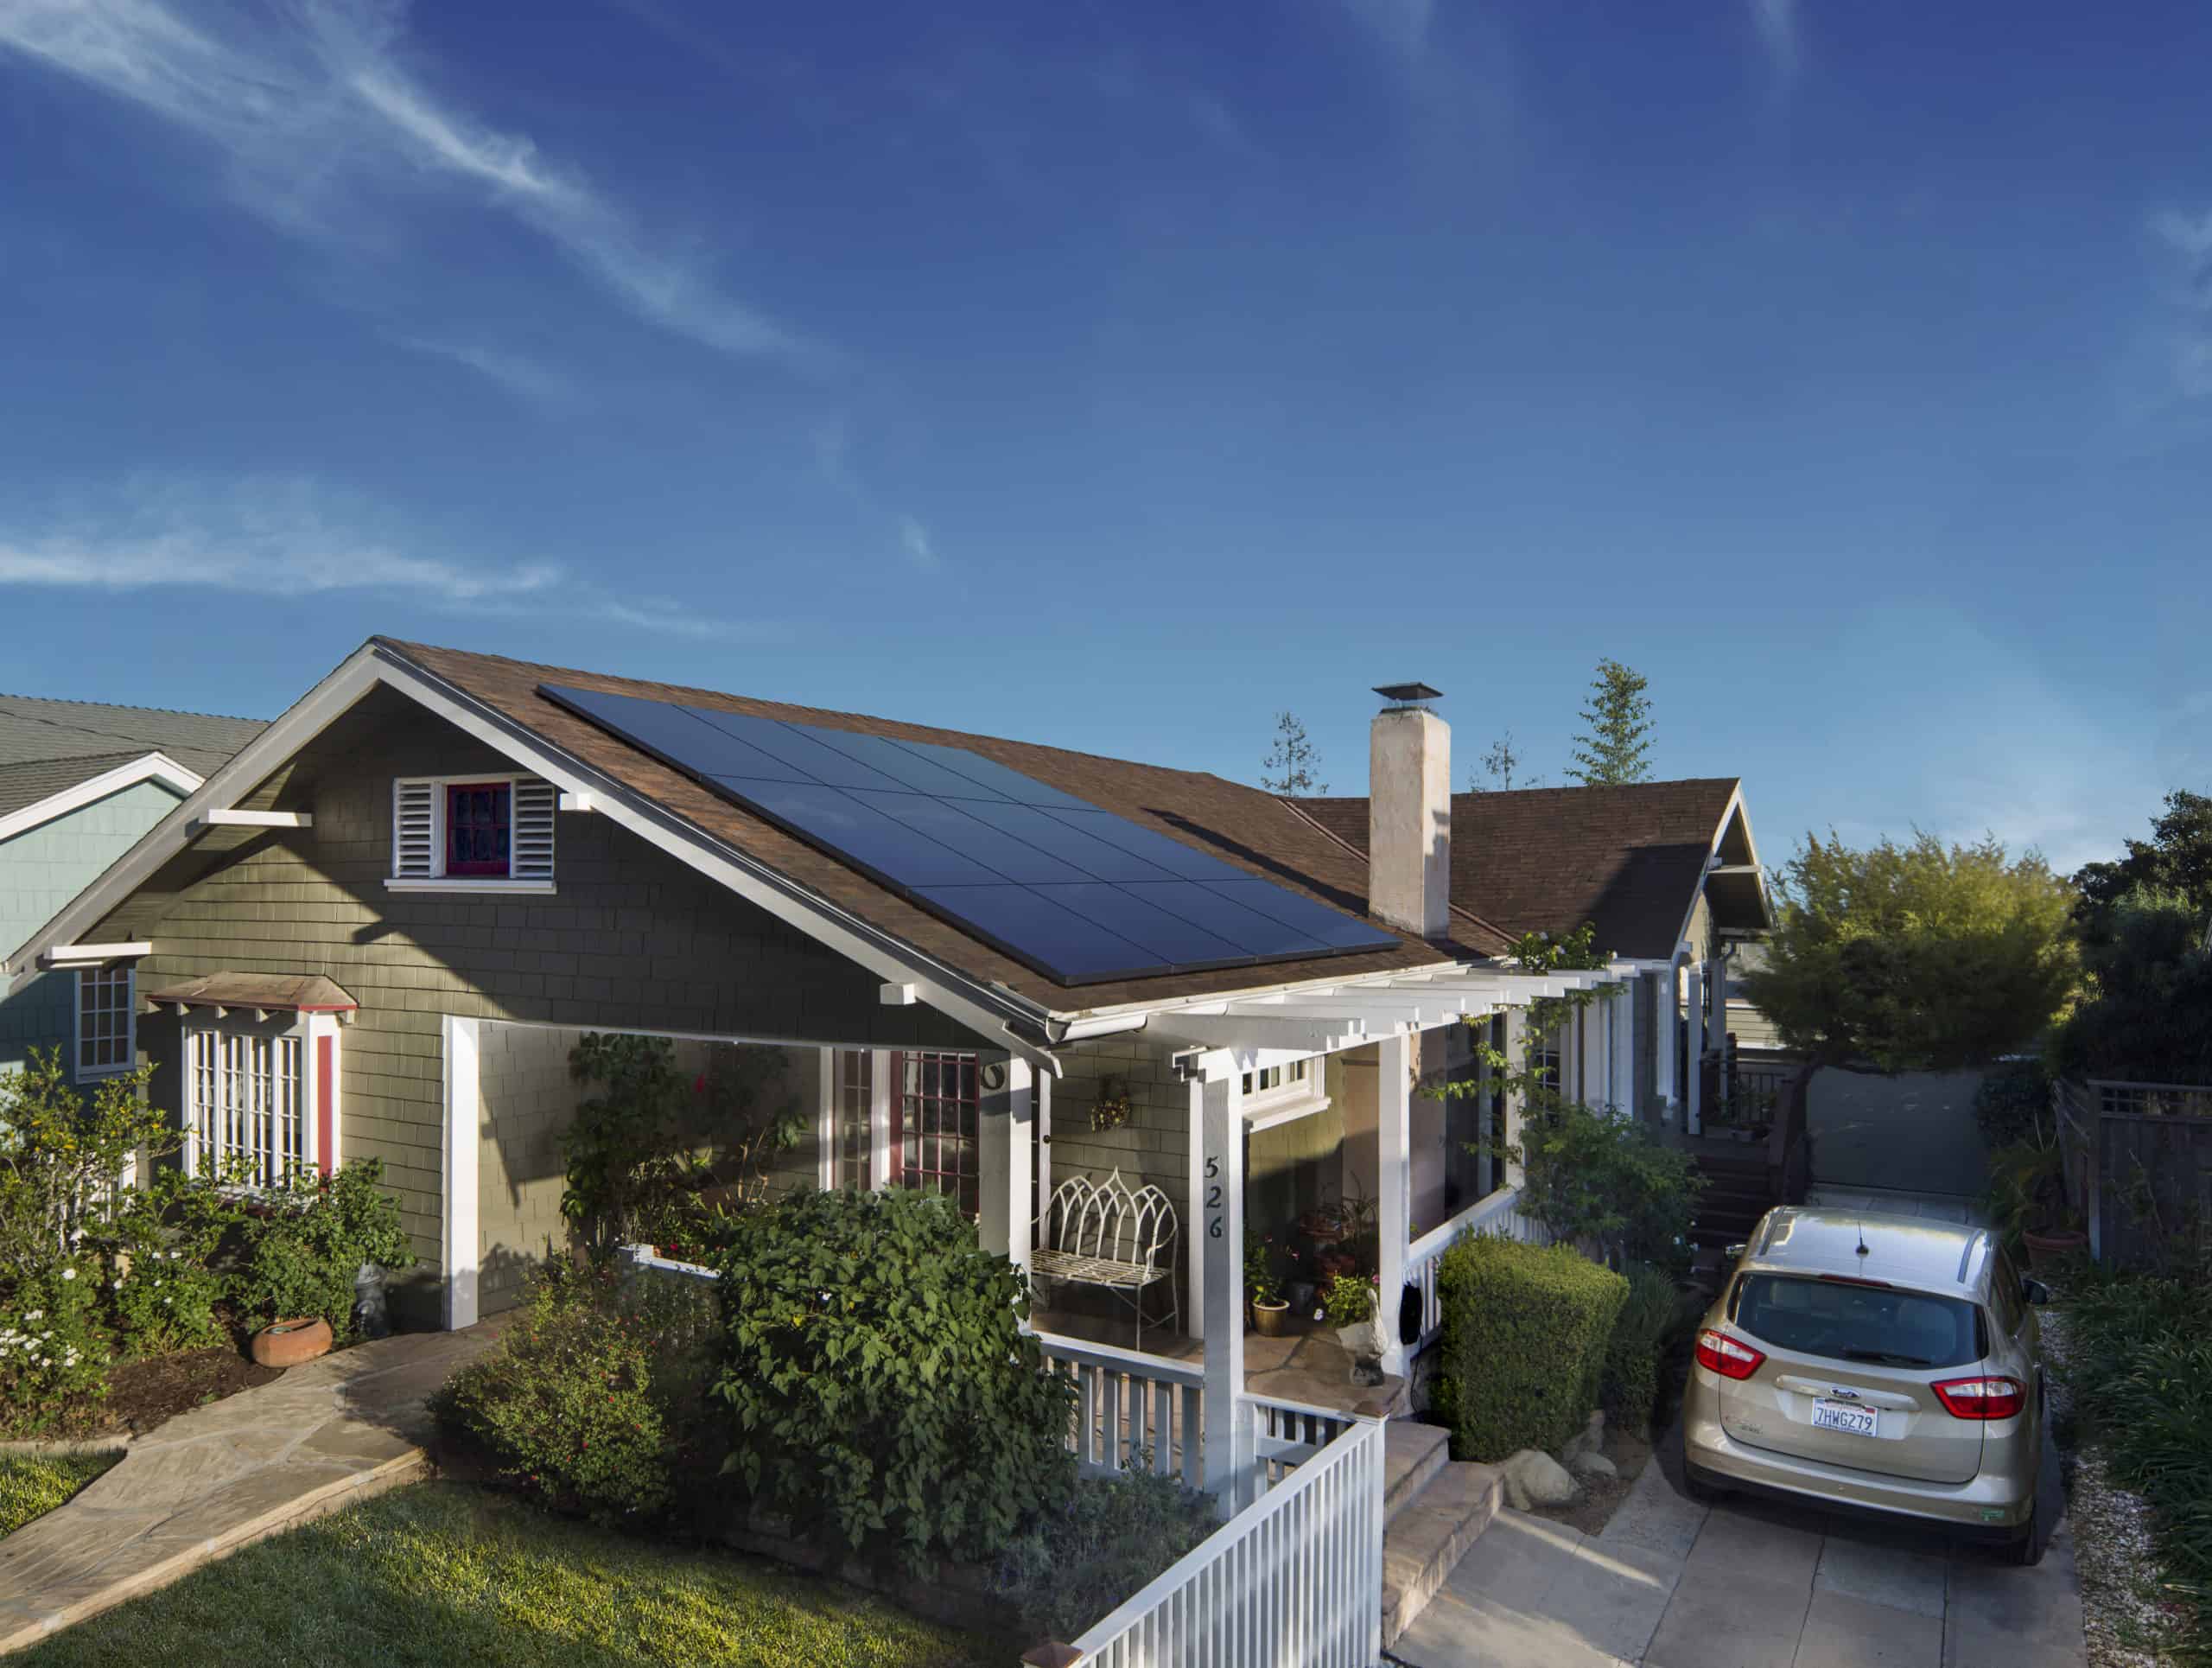 SunPower Solar Panels On A Home